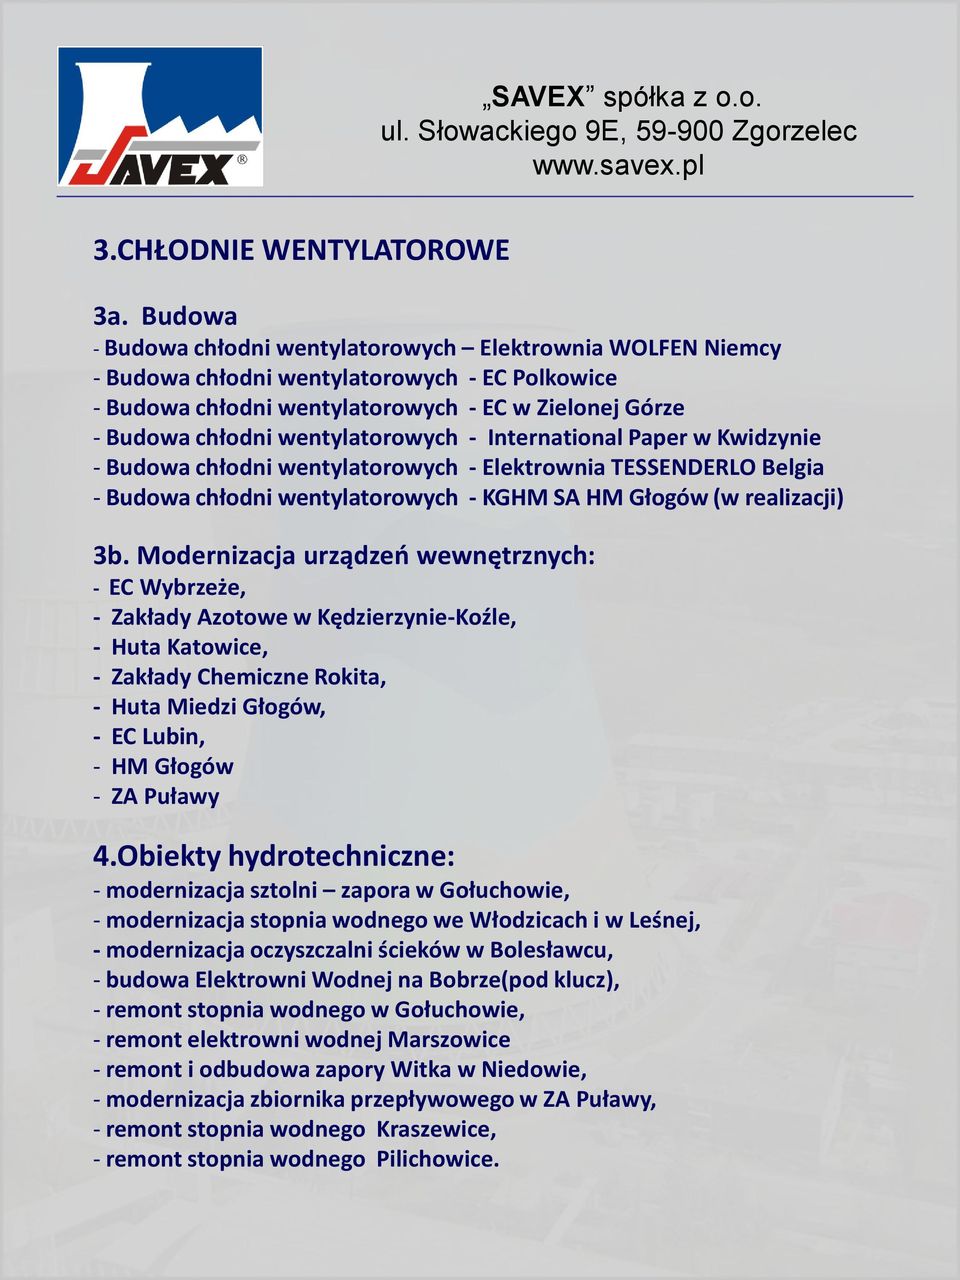 wentylatorowych - International Paper w Kwidzynie - Budowa chłodni wentylatorowych - Elektrownia TESSENDERLO Belgia - Budowa chłodni wentylatorowych - KGHM SA HM Głogów (w realizacji) 3b.